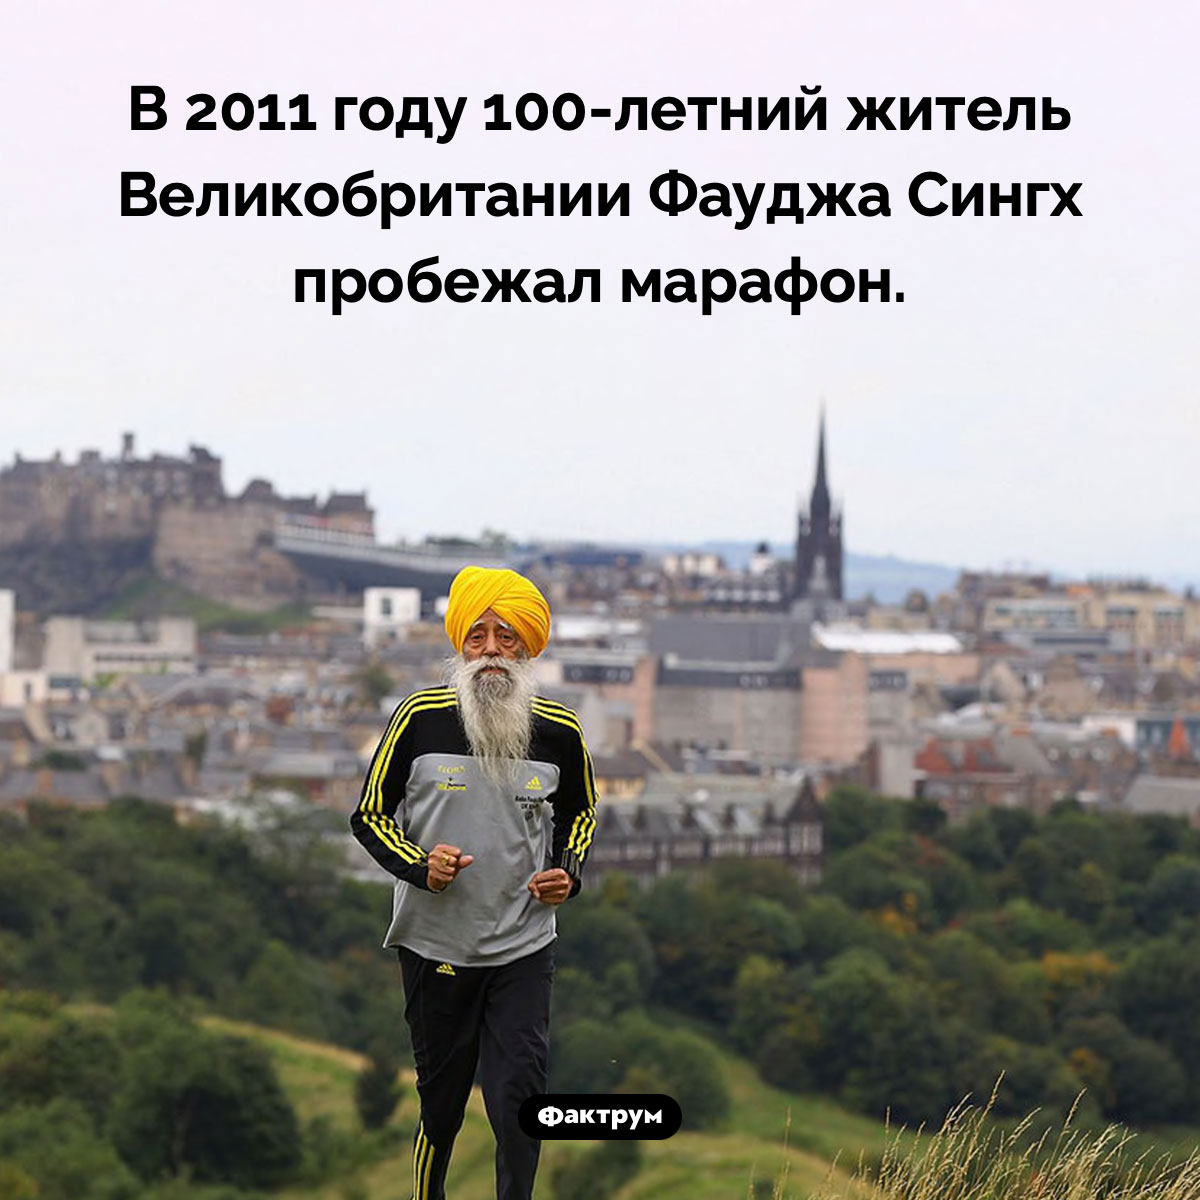 100-летний марафонец